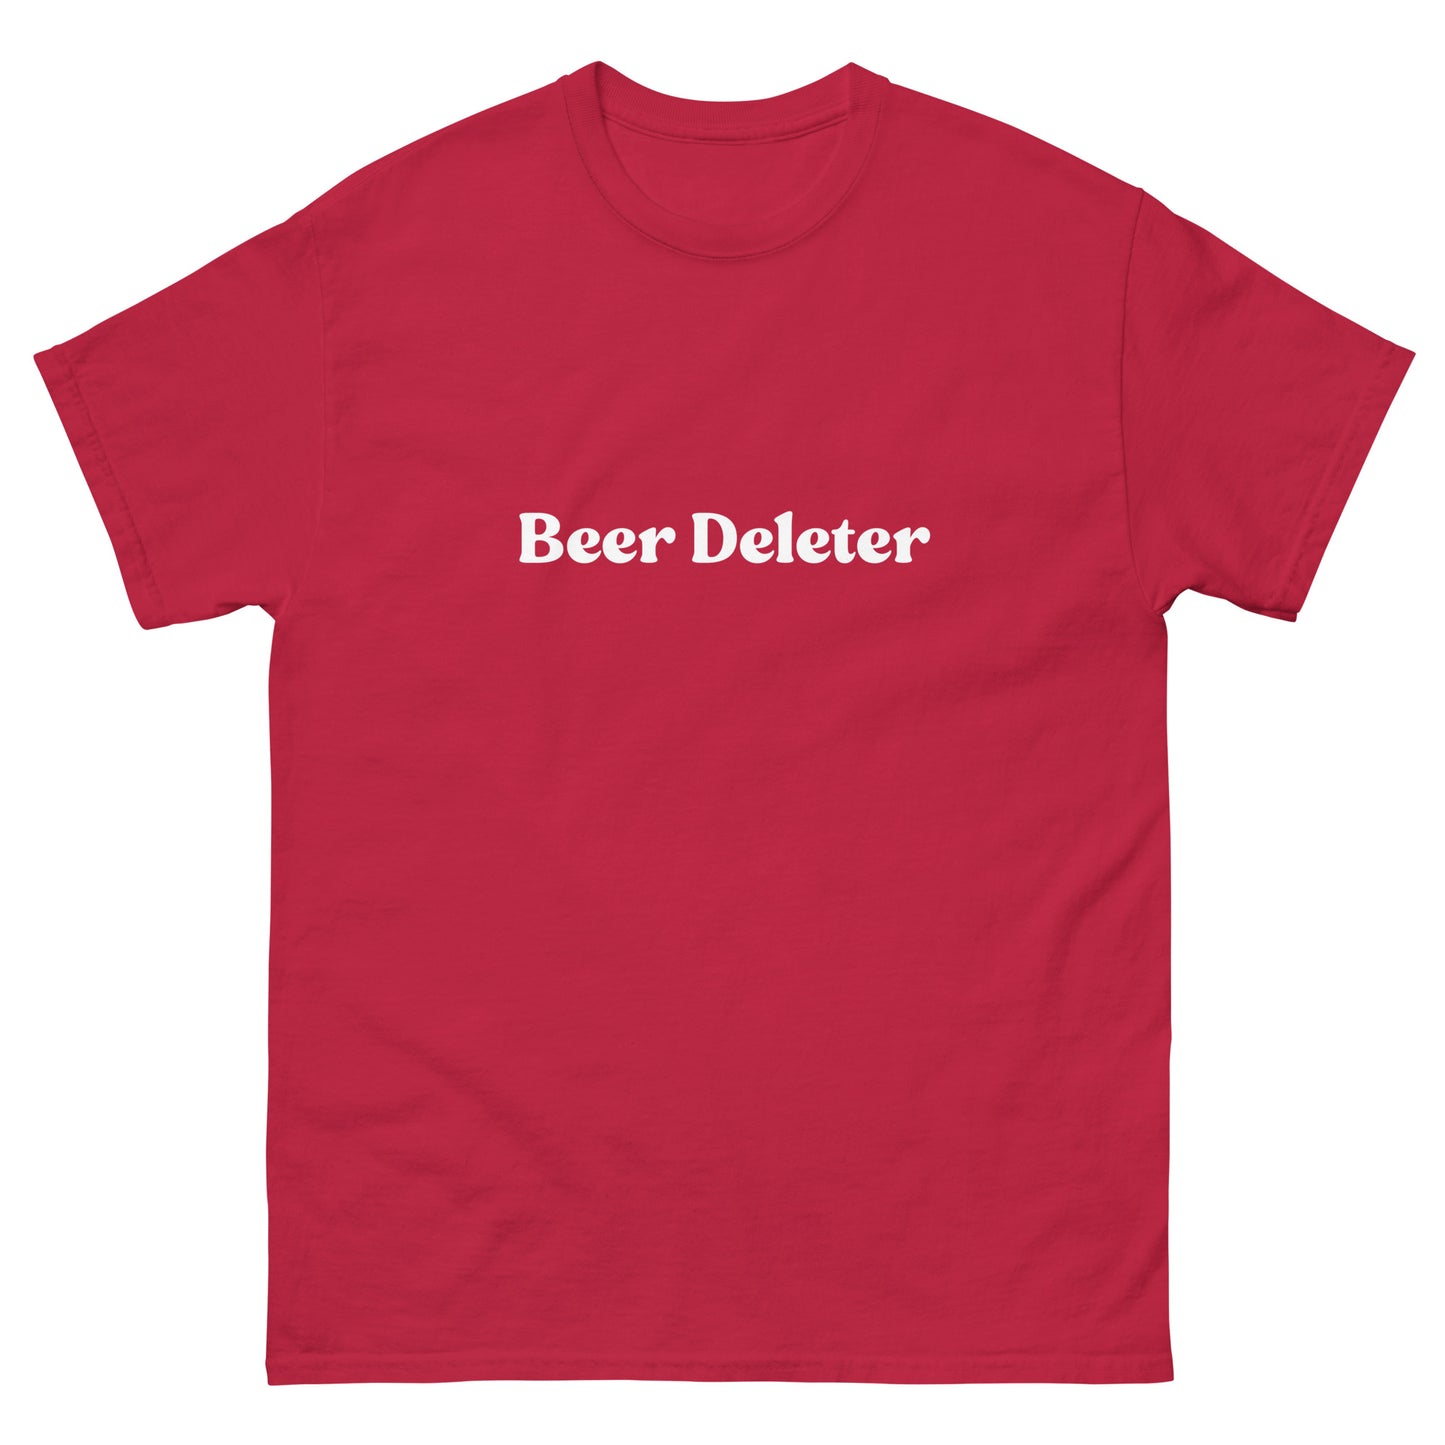 Beer Deleter T-Shirt